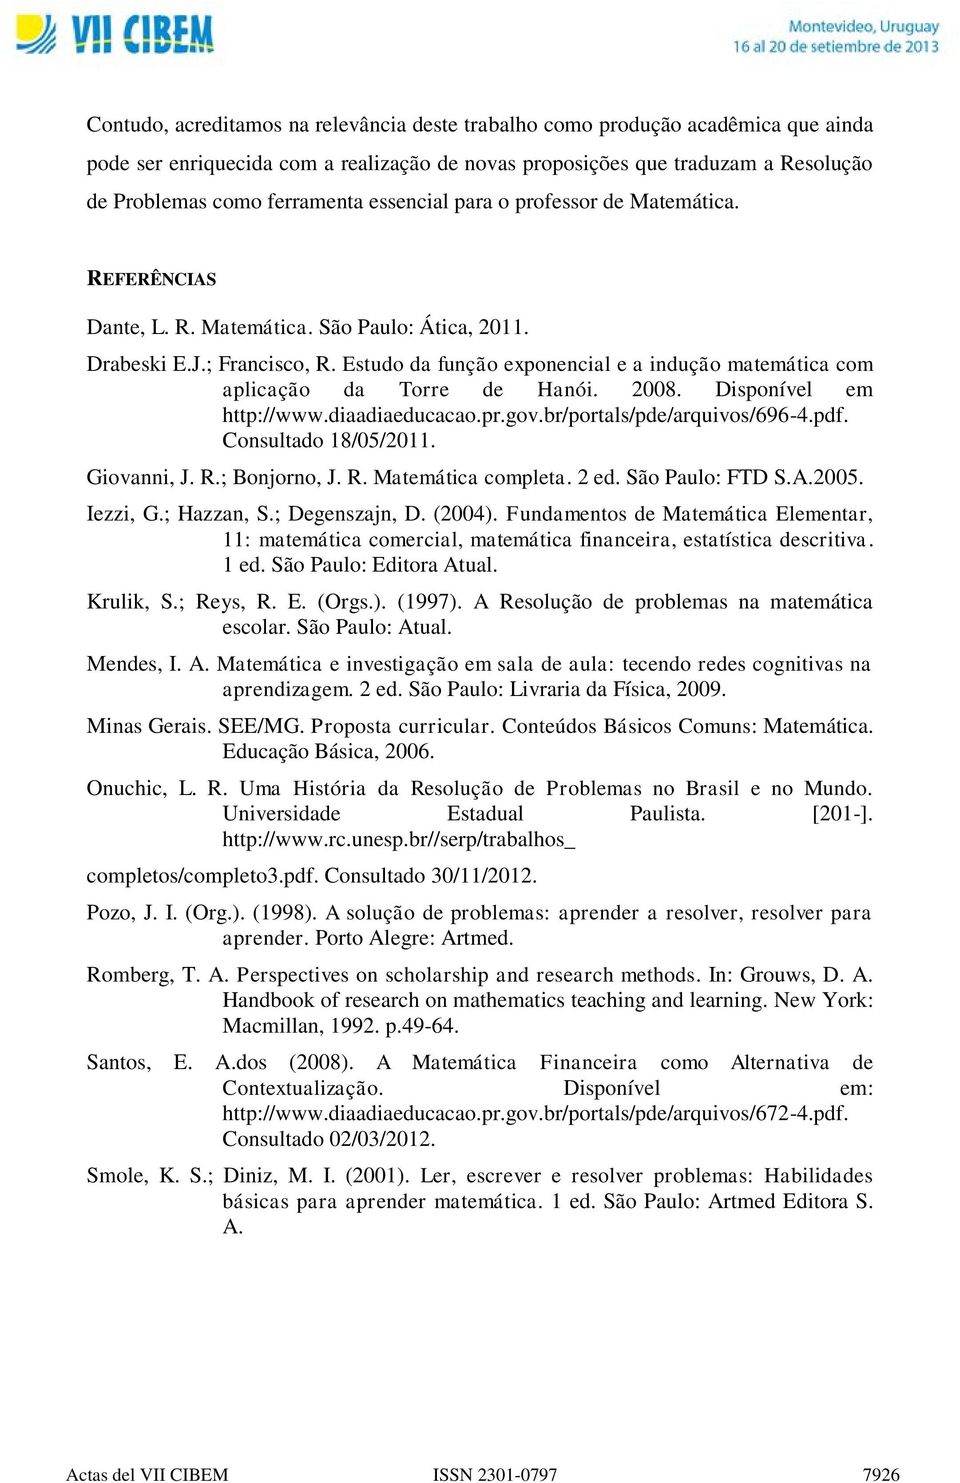 Estudo da função exponencial e a indução matemática com aplicação da Torre de Hanói. 2008. Disponível em http://www.diaadiaeducacao.pr.gov.br/portals/pde/arquivos/696-4.pdf. Consultado 18/05/2011.